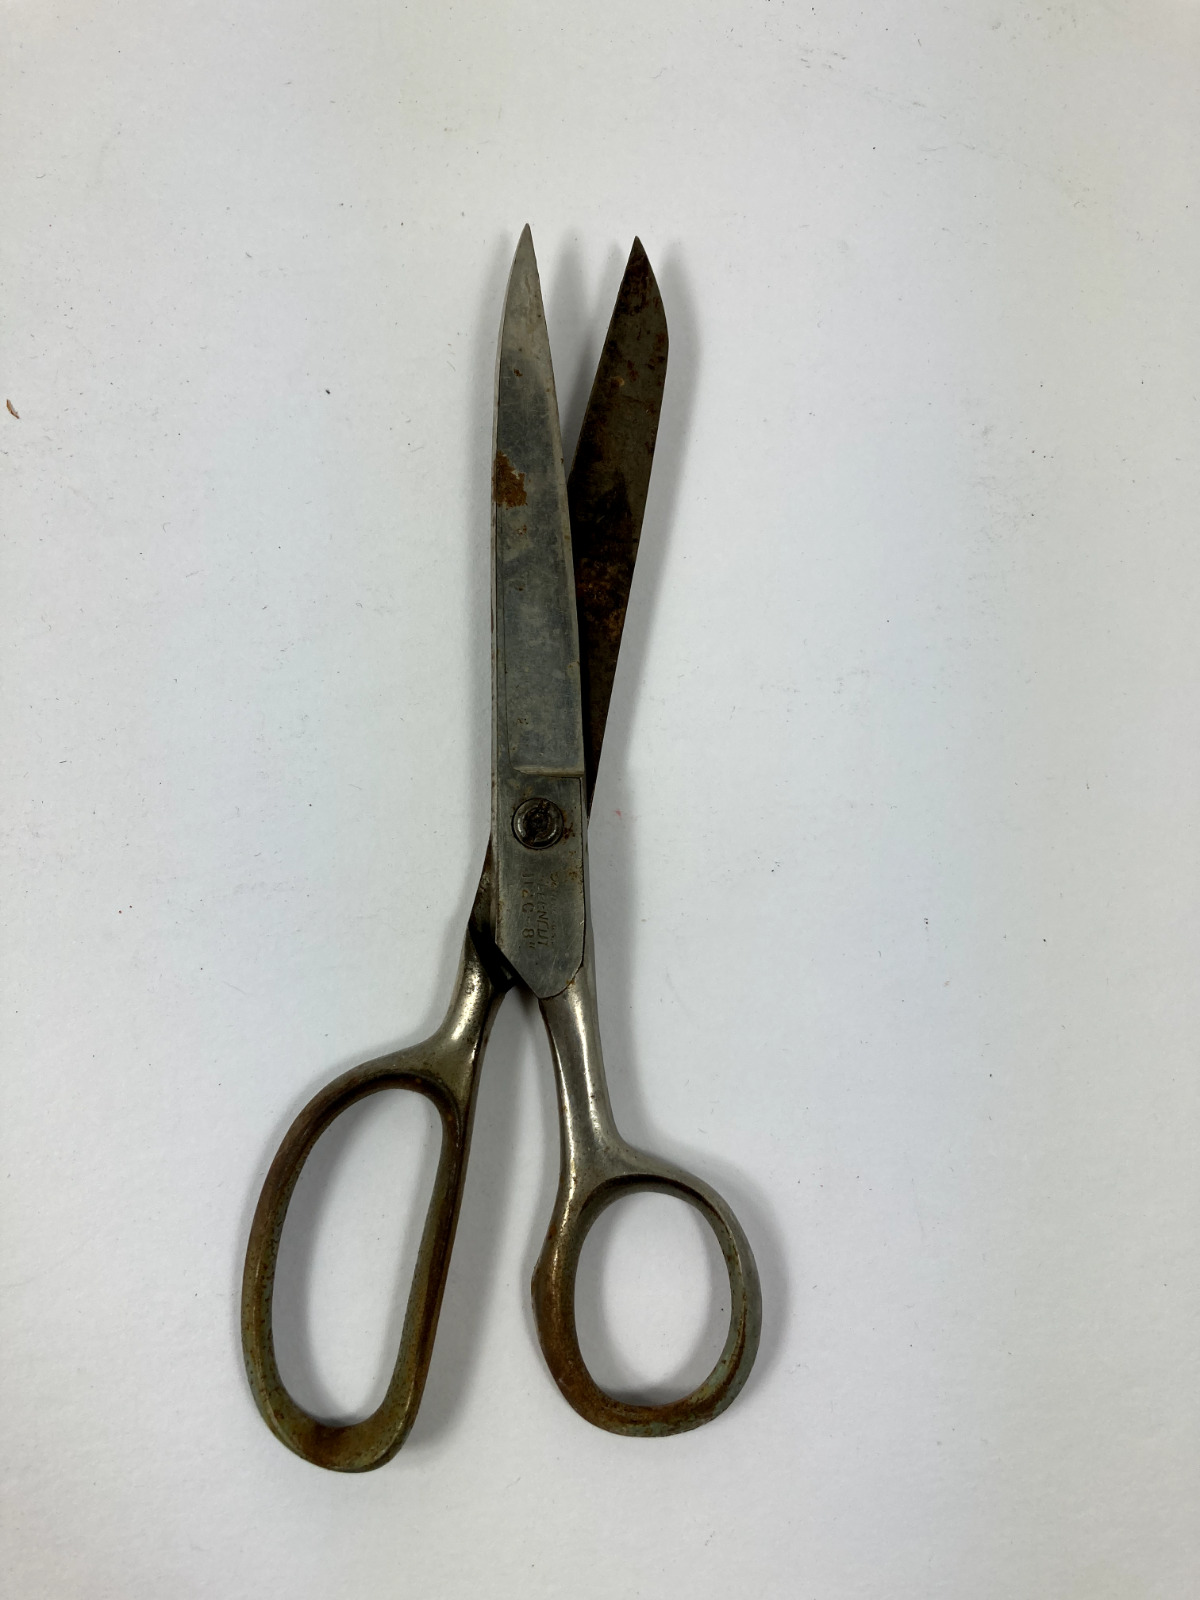 Vintage Kleencut deluxe scissors shears 112C 8\